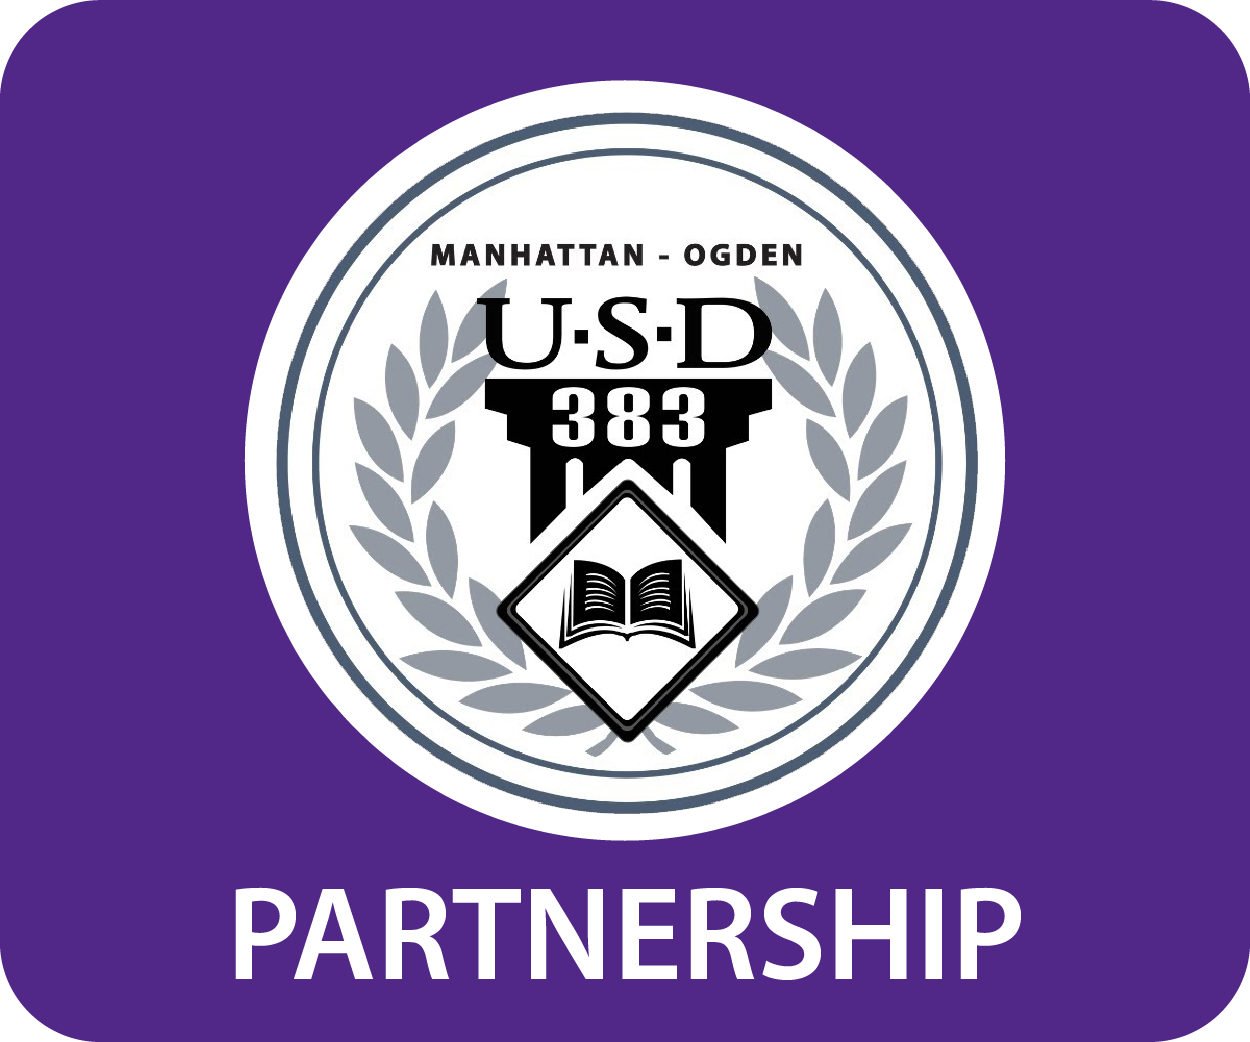 Manhattan-Ogden USD 383 logo with the word Partnership under it